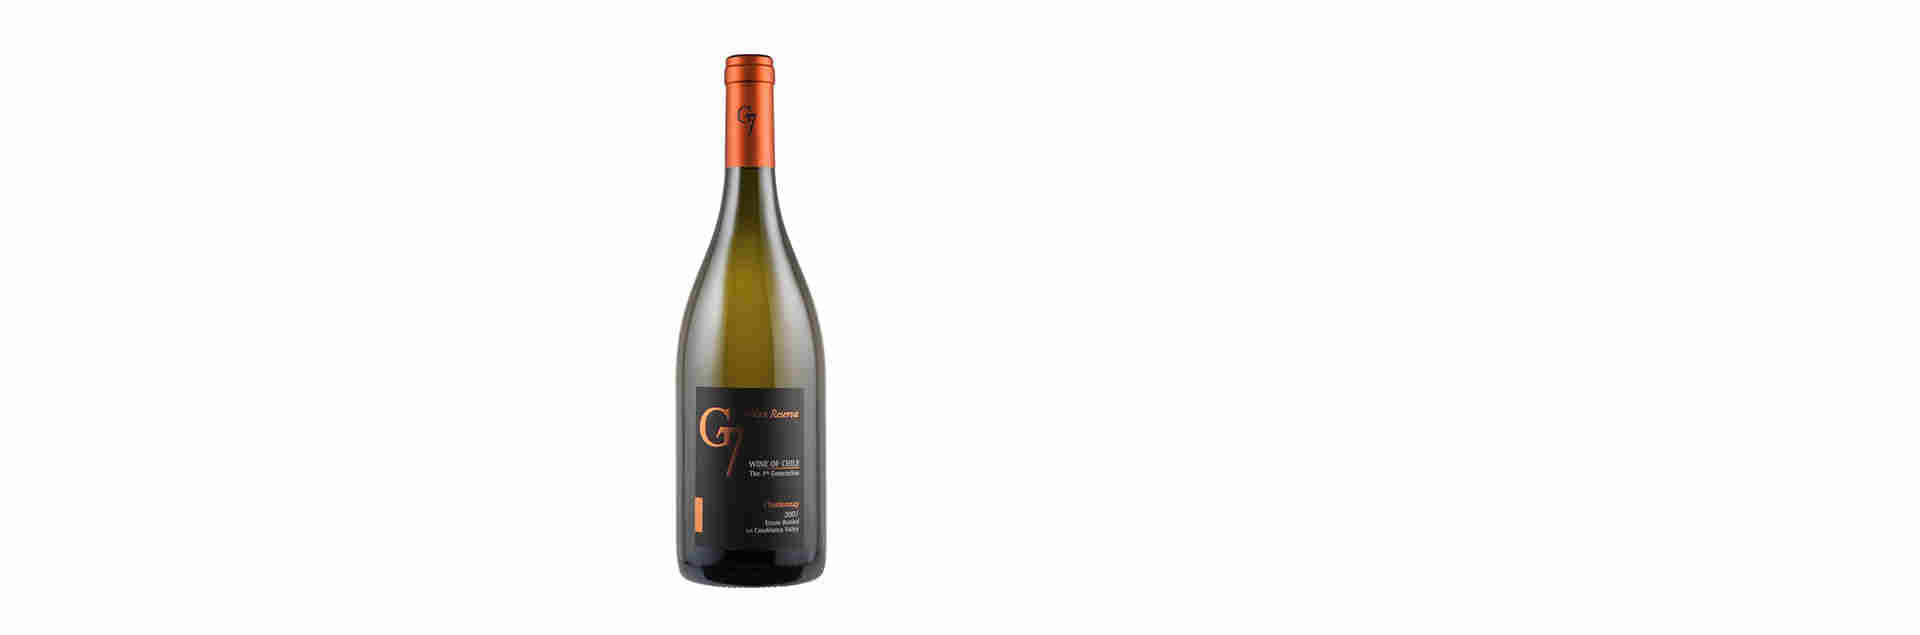 Rượu Vang Chile G7 Gran trắng